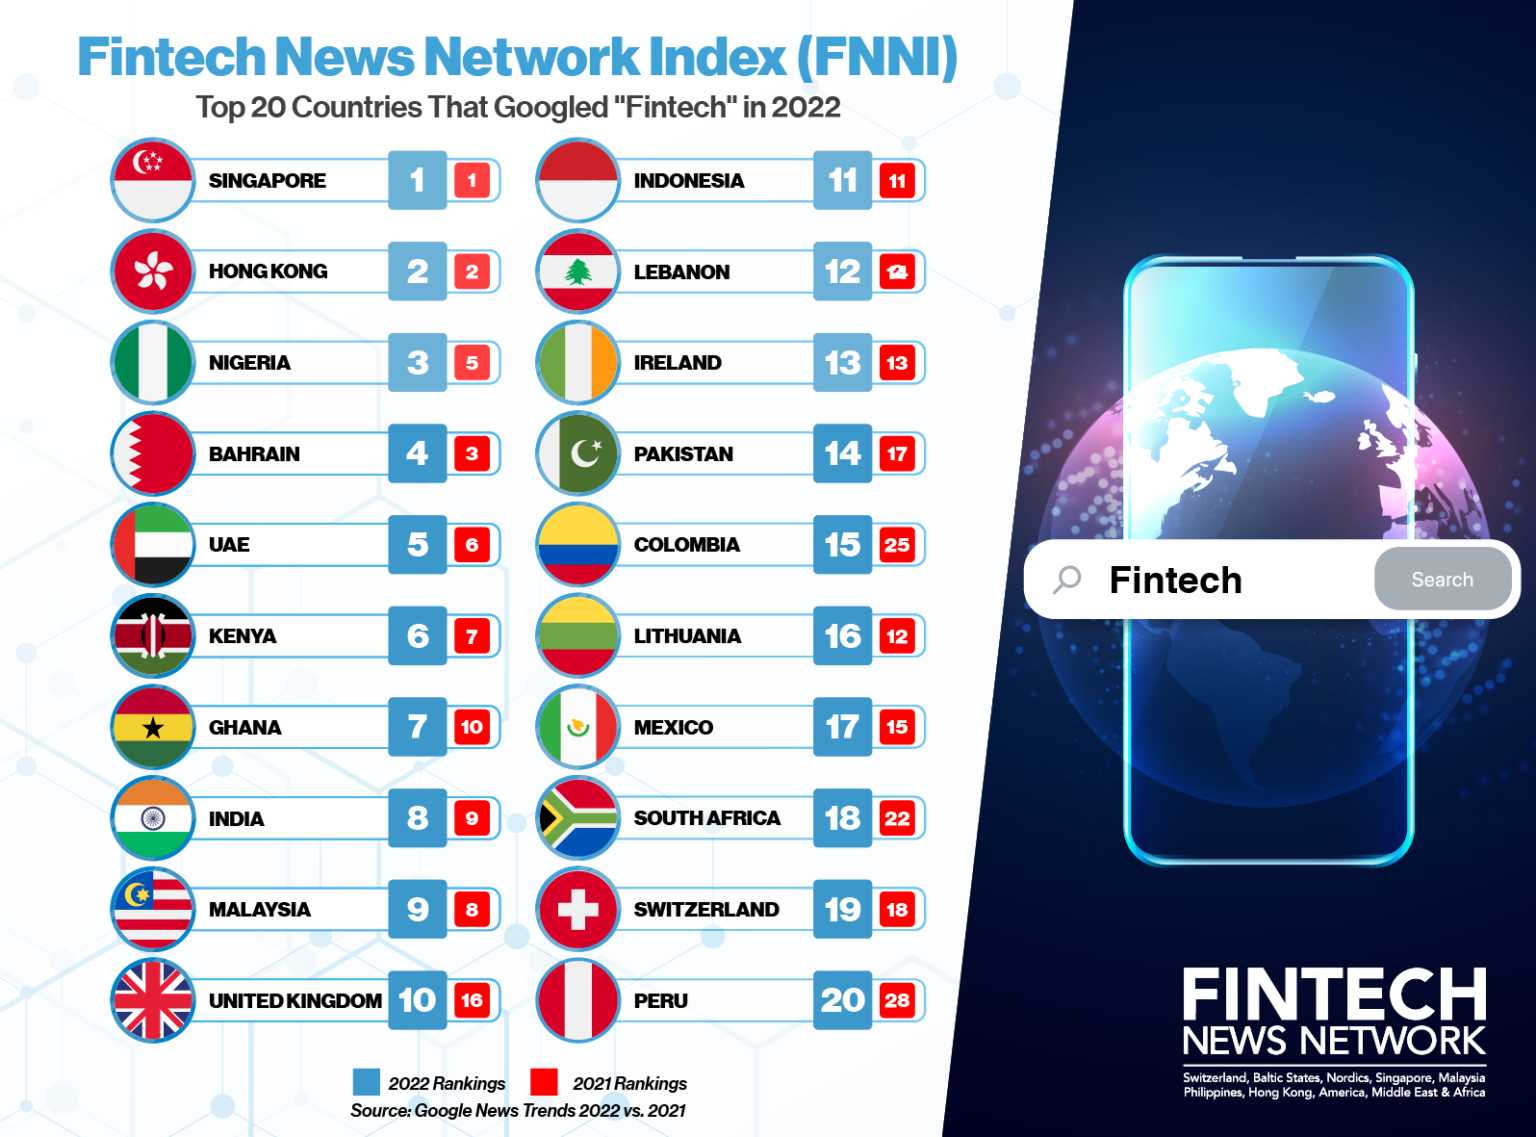 Fintech News Network Index 2022